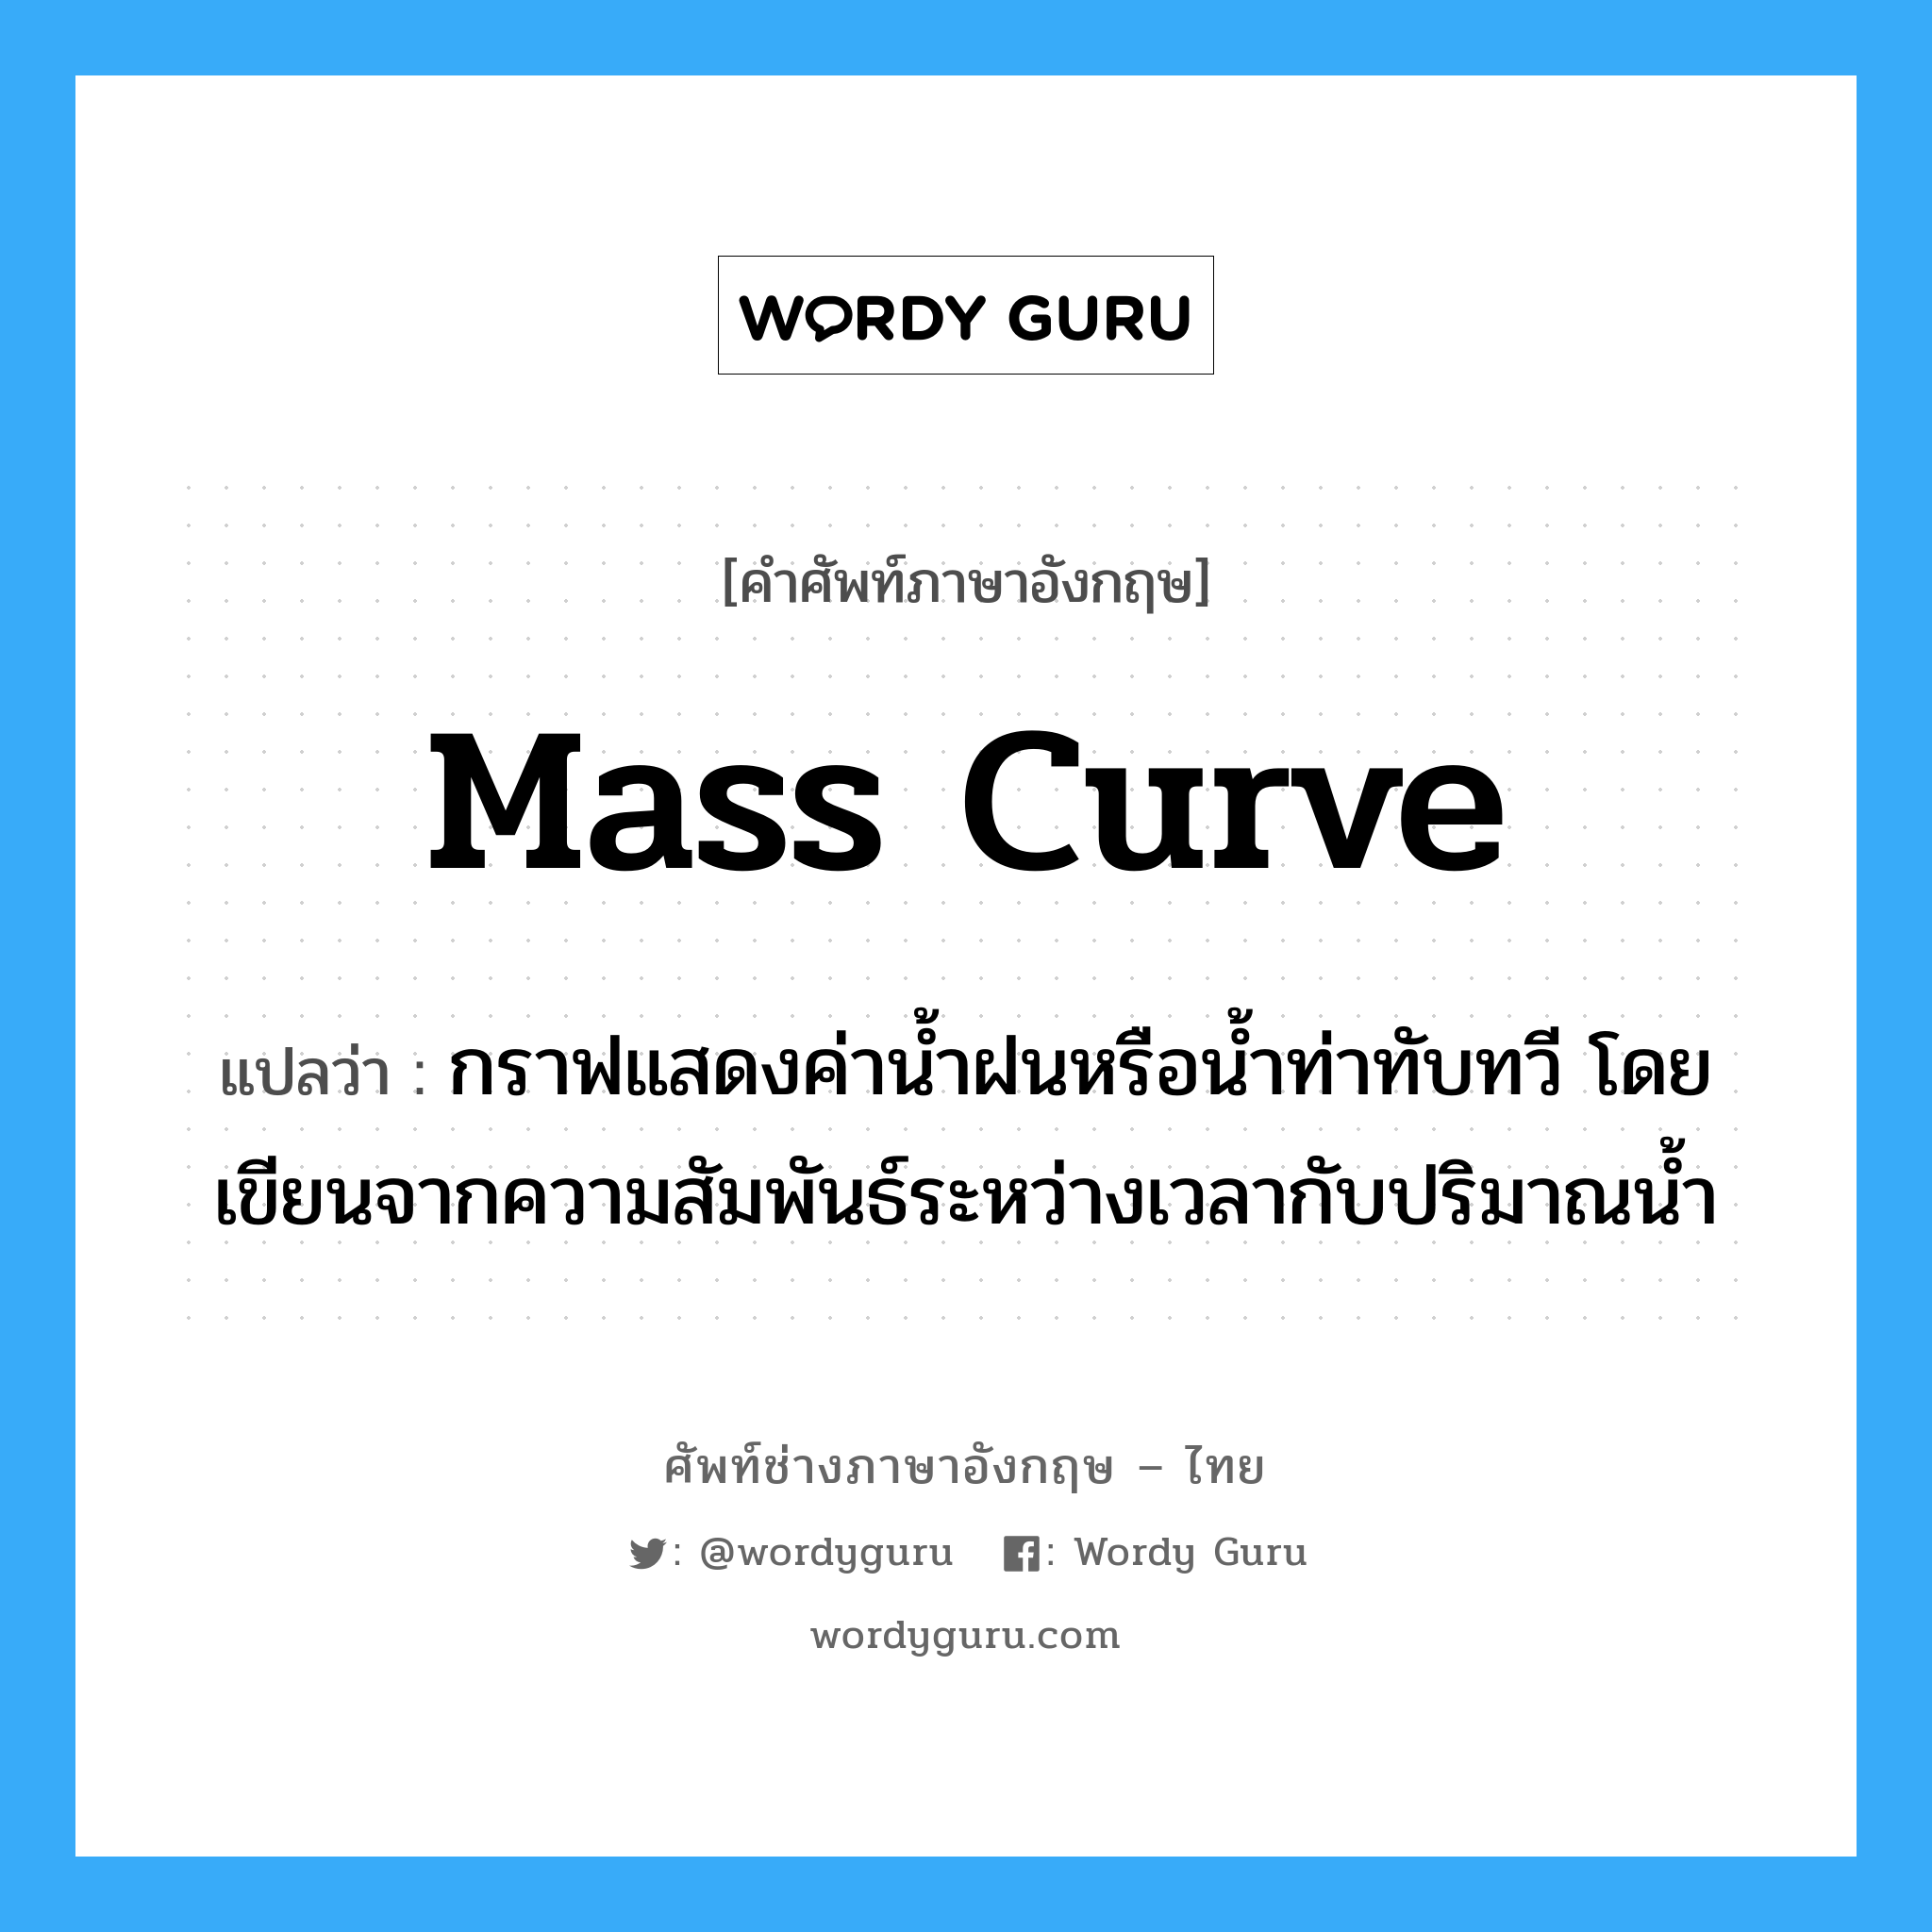 mass curve แปลว่า?, คำศัพท์ช่างภาษาอังกฤษ - ไทย mass curve คำศัพท์ภาษาอังกฤษ mass curve แปลว่า กราฟแสดงค่าน้ำฝนหรือน้ำท่าทับทวี โดยเขียนจากความสัมพันธ์ระหว่างเวลากับปริมาณน้ำ